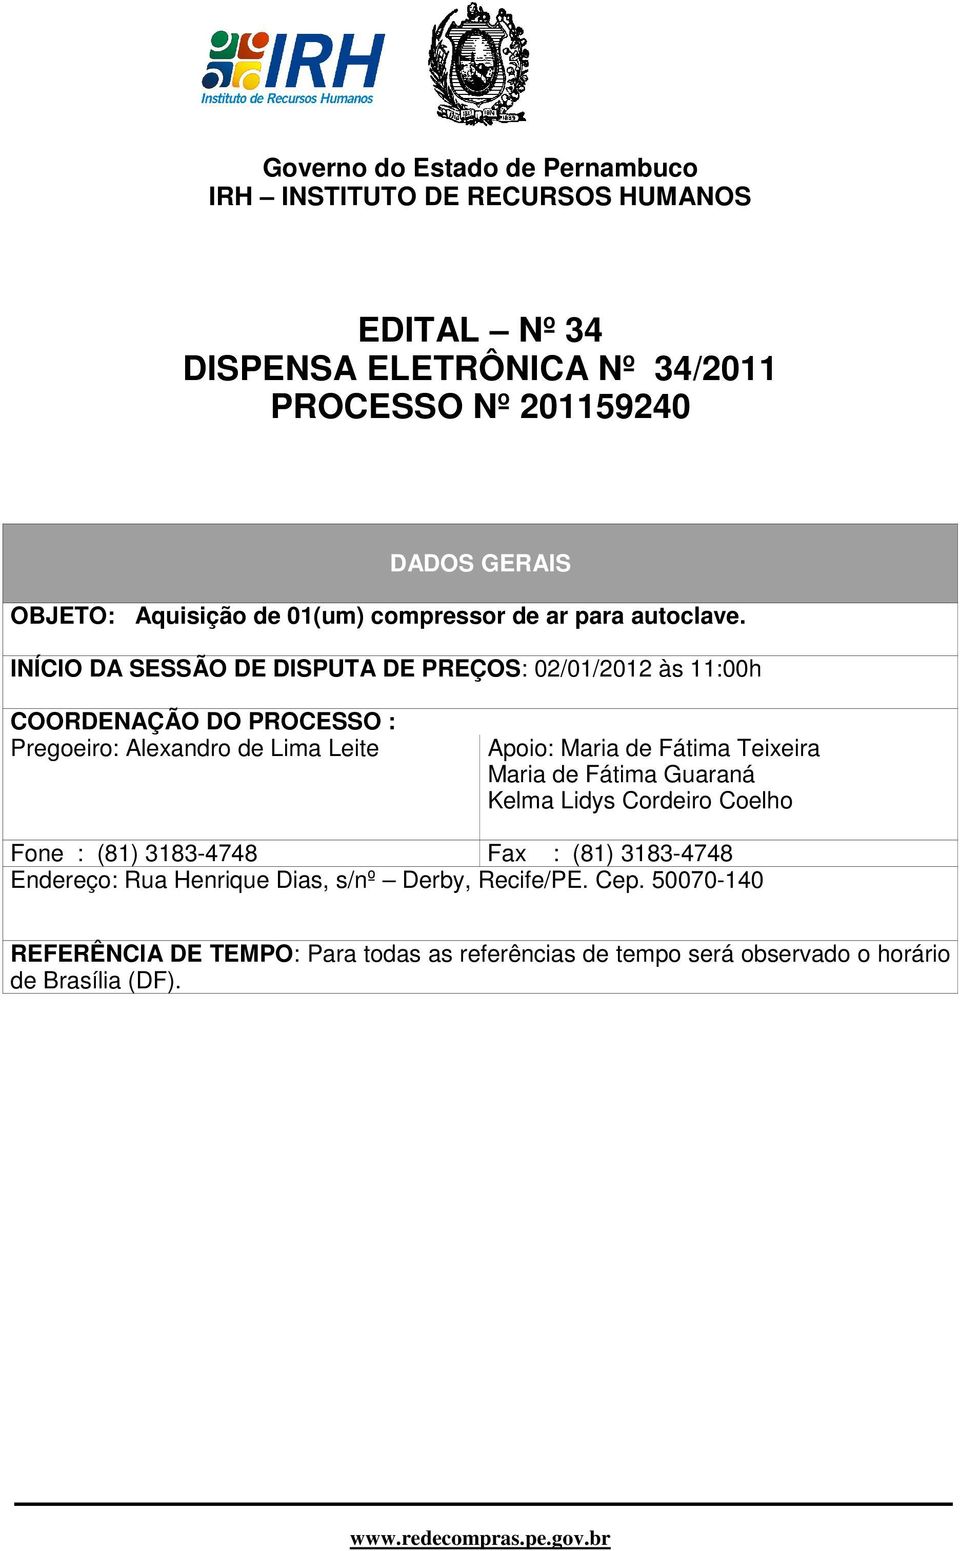 INÍCIO DA SESSÃO DE DISPUTA DE PREÇOS: 02/01/2012 às 11:00h COORDENAÇÃO DO PROCESSO : Pregoeiro: Alexandro de Lima Leite Apoio: Maria de Fátima Teixeira